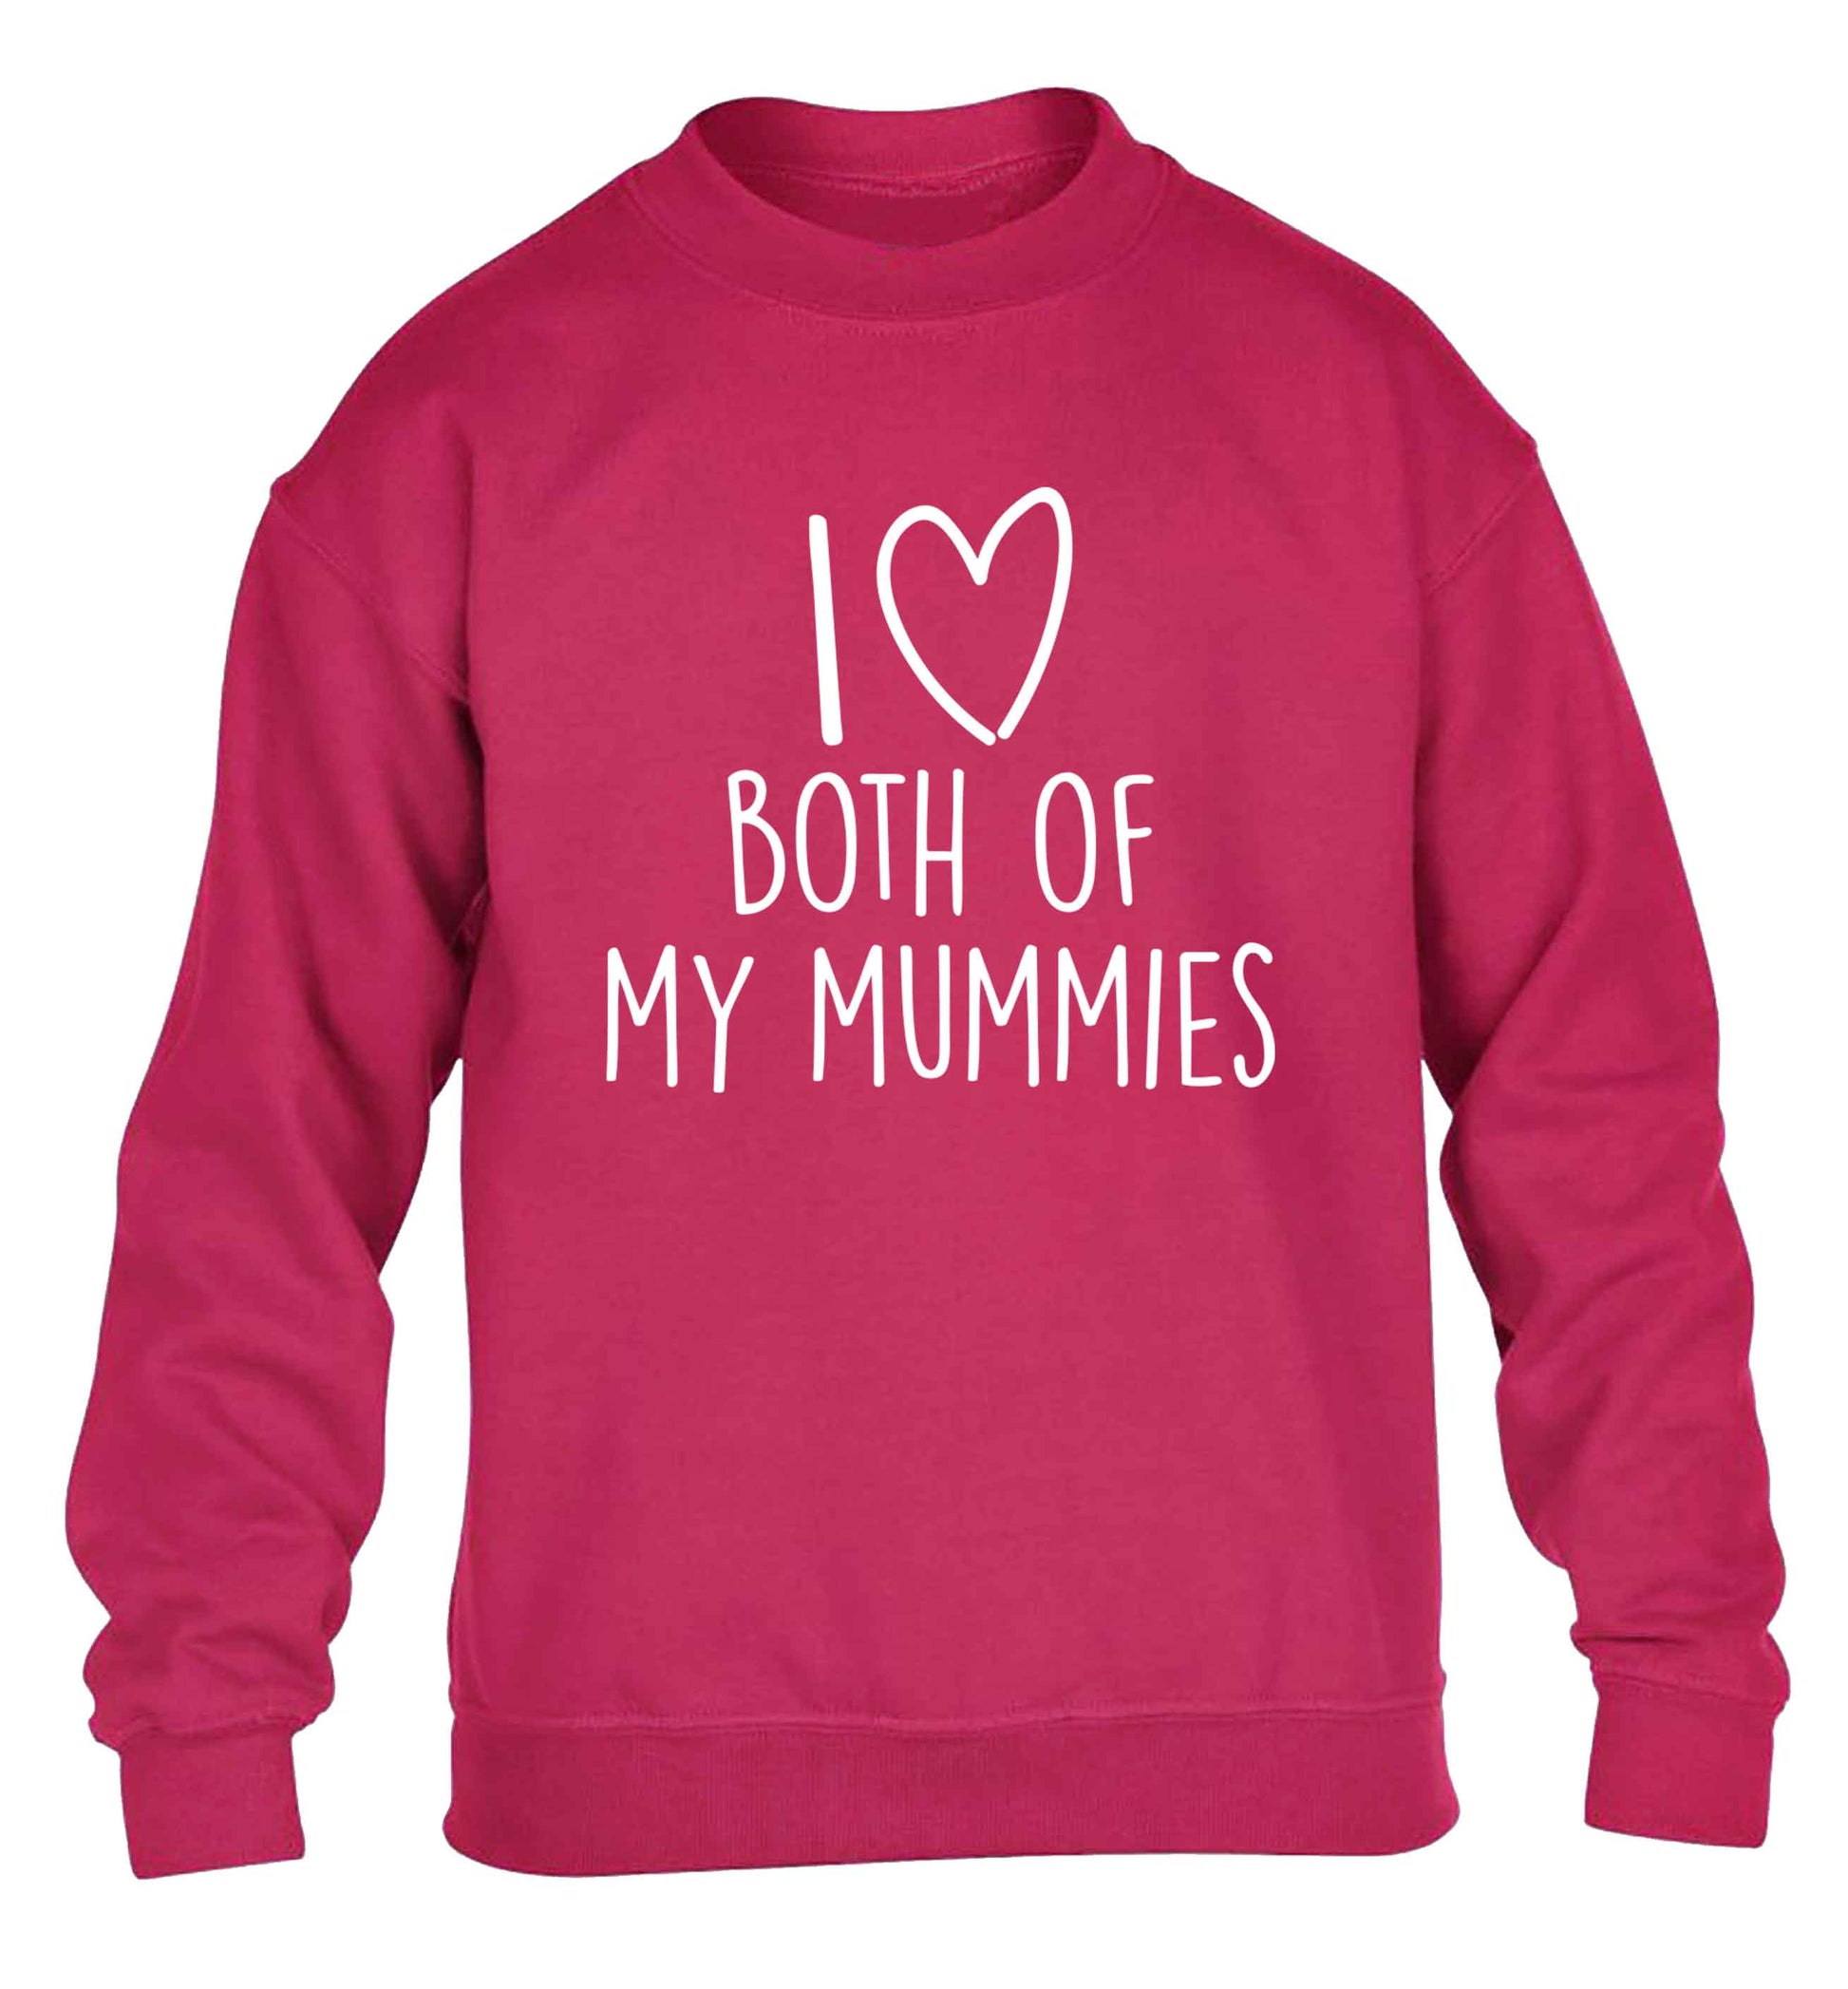 I love both of my mummies children's pink sweater 12-13 Years